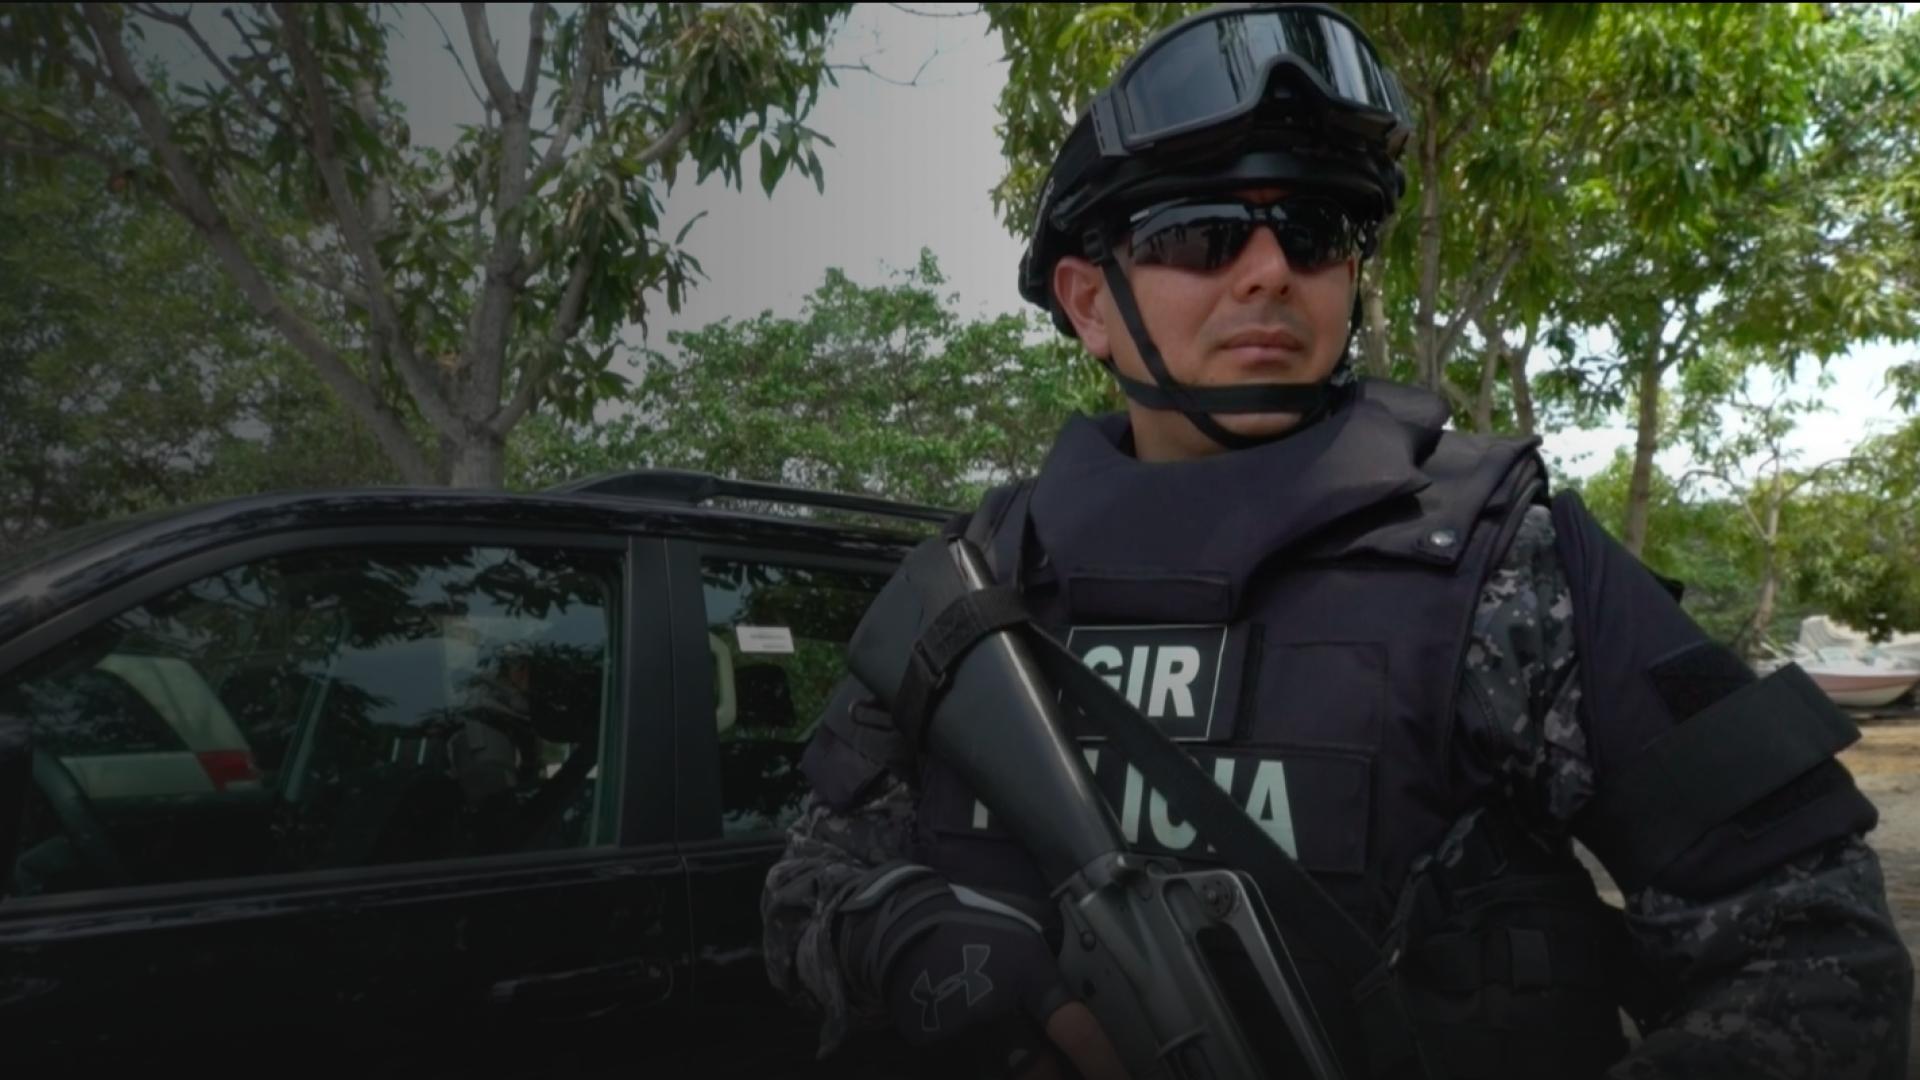 Ecuador Special Police